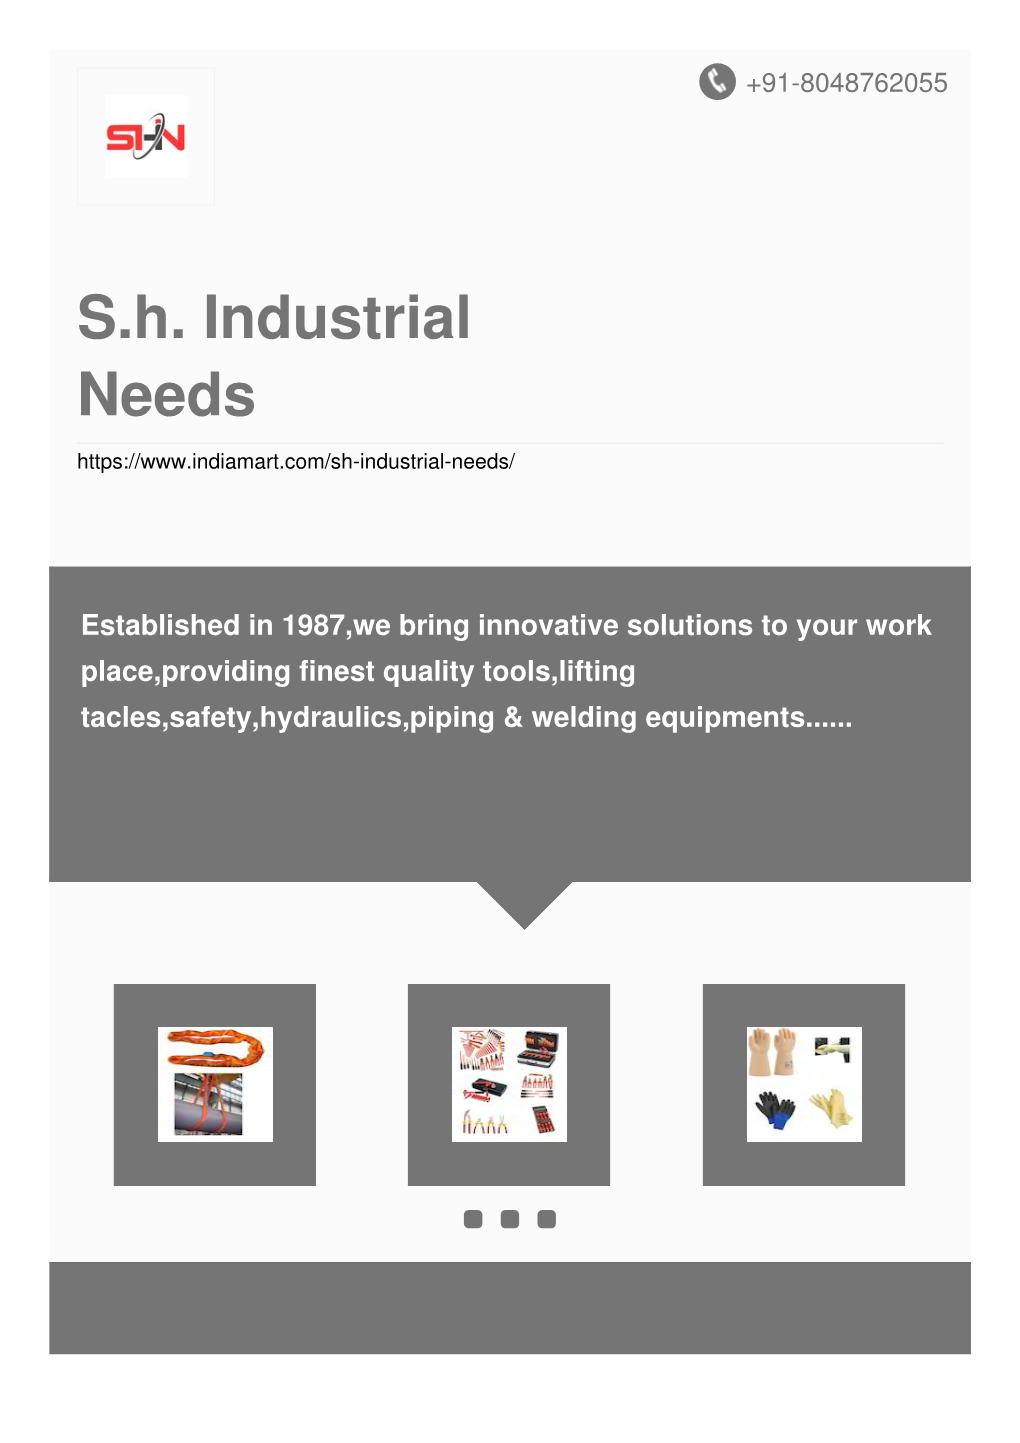 S.H. Industrial Needs